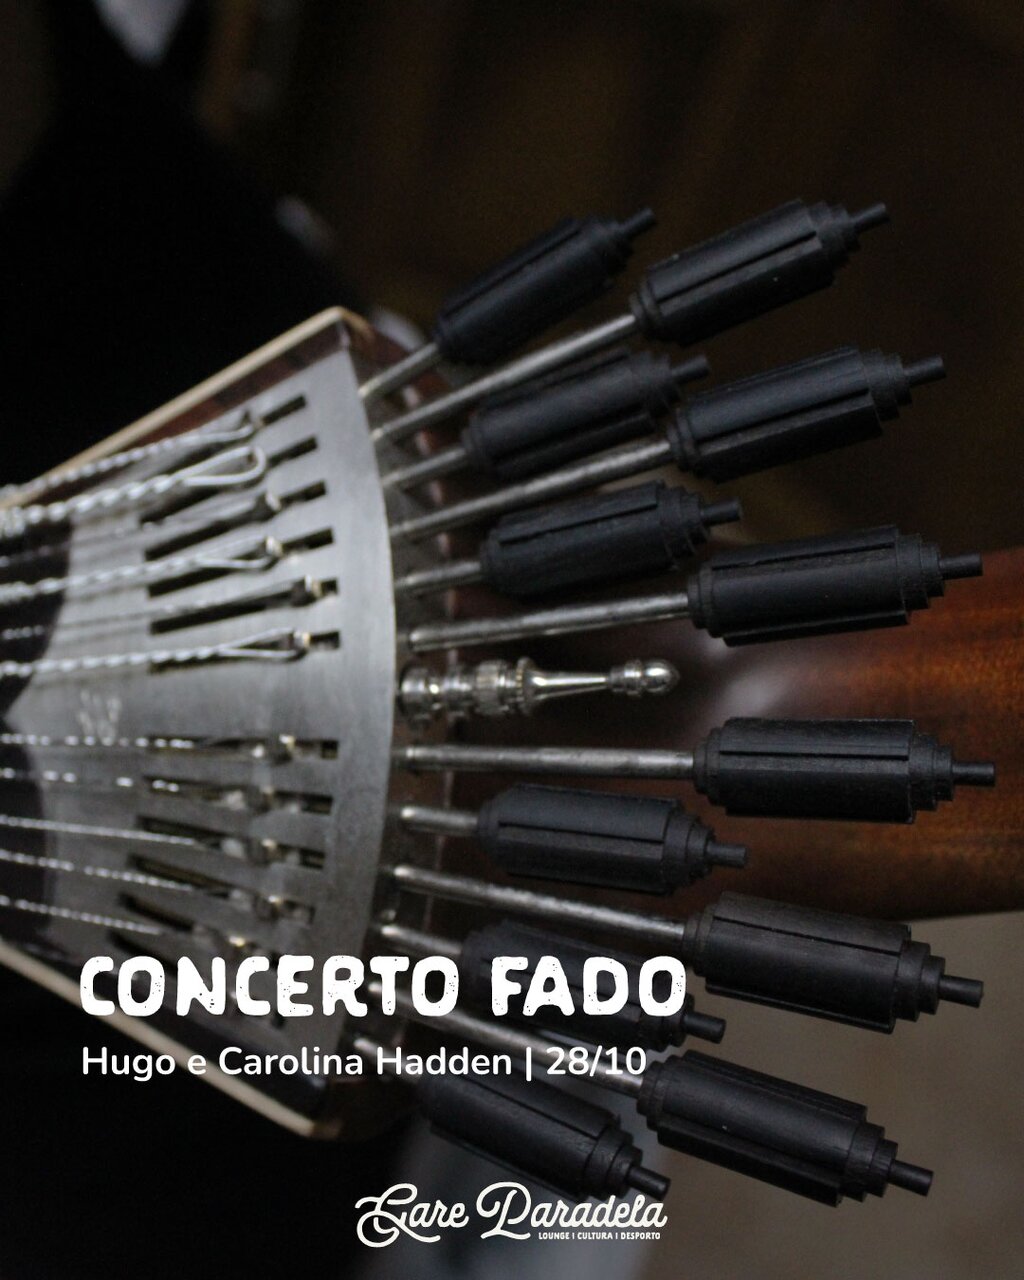 28 out - Concerto Fado - com Hugo e Carolina Hadden - Gare Paradela